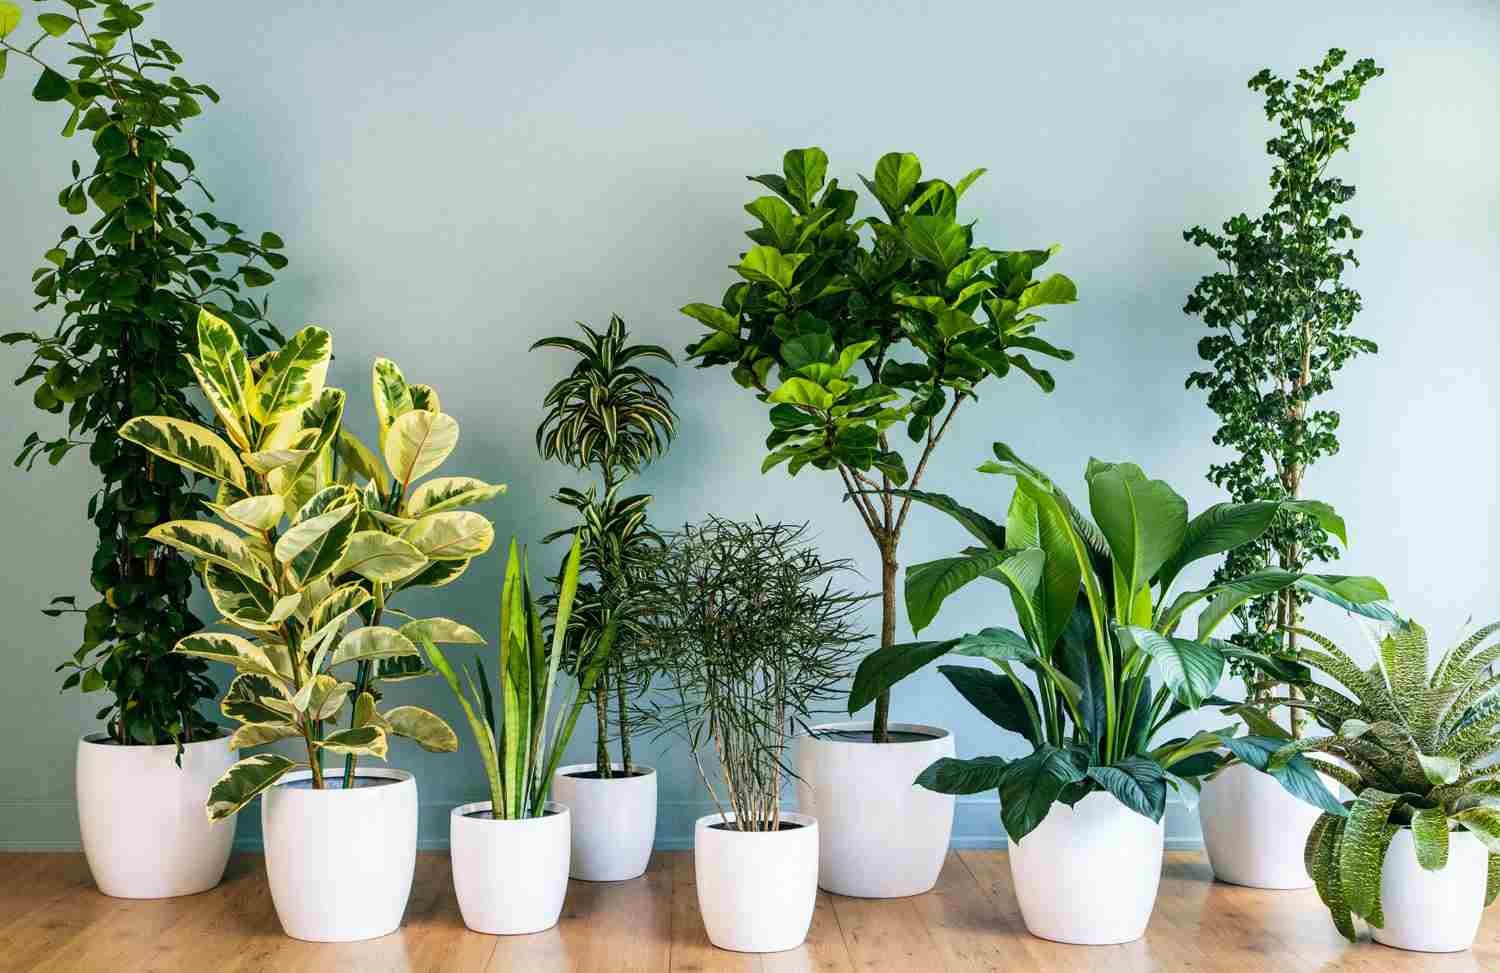 5 cách trang trí cây xanh trong nhà đẹp mà không đắt